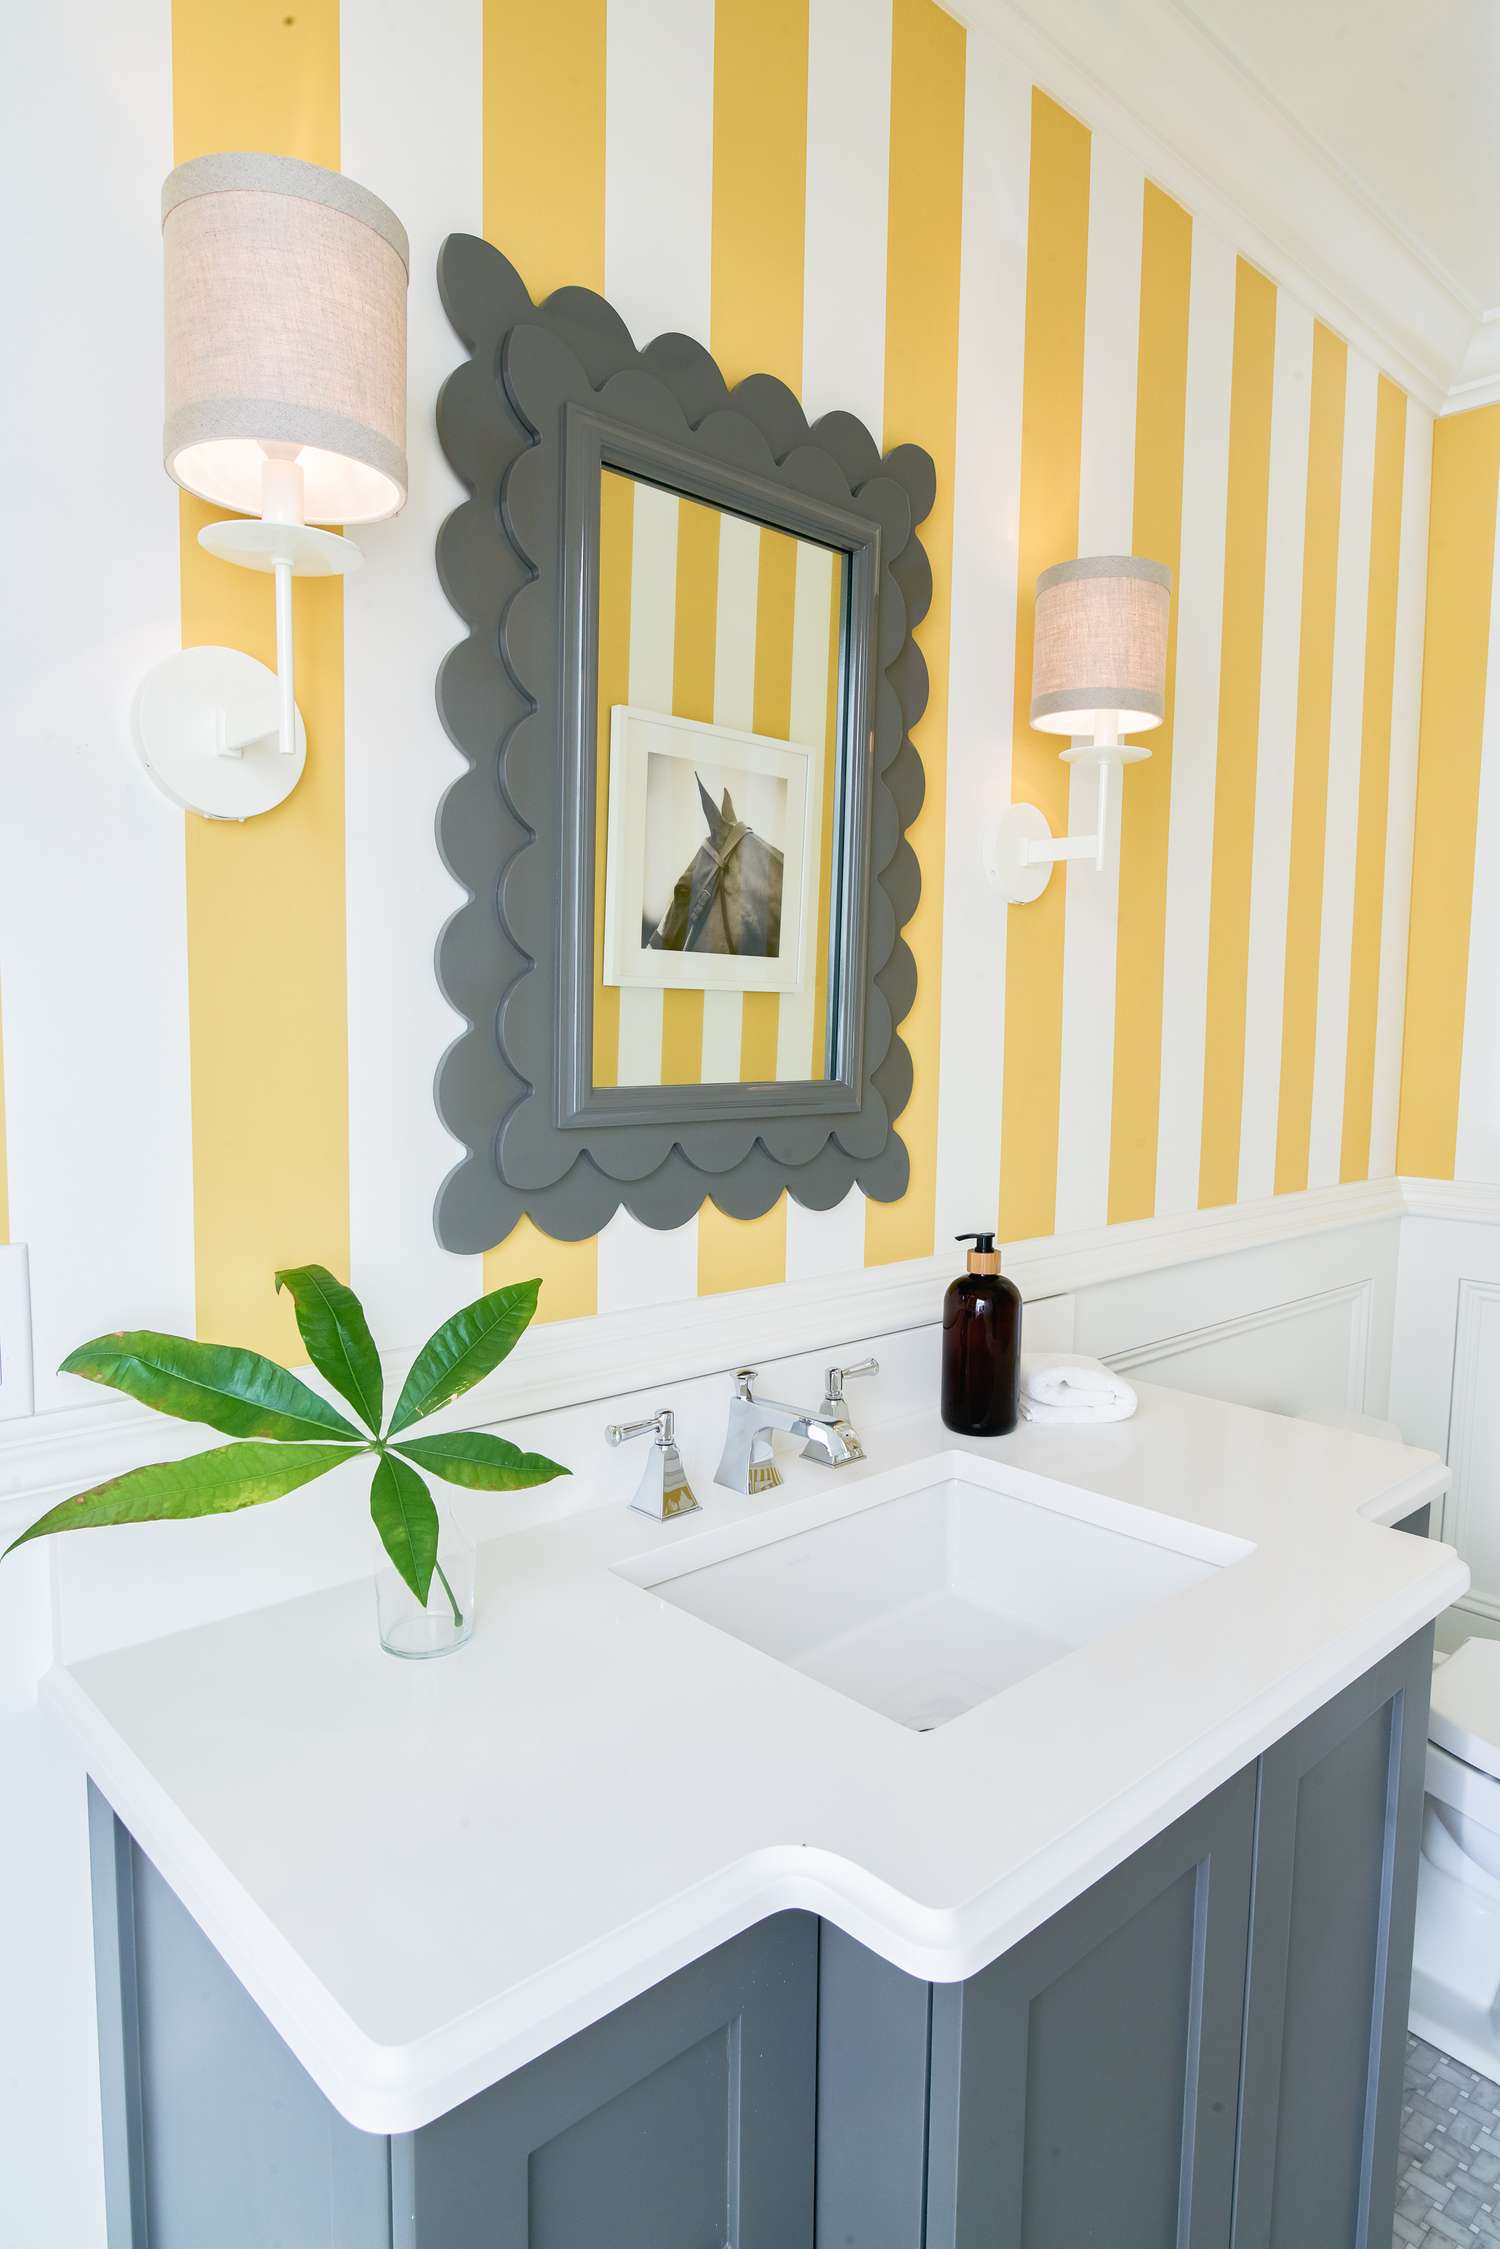 Meuble-lavabo et miroir gris avec murs rayés blanc et jaune